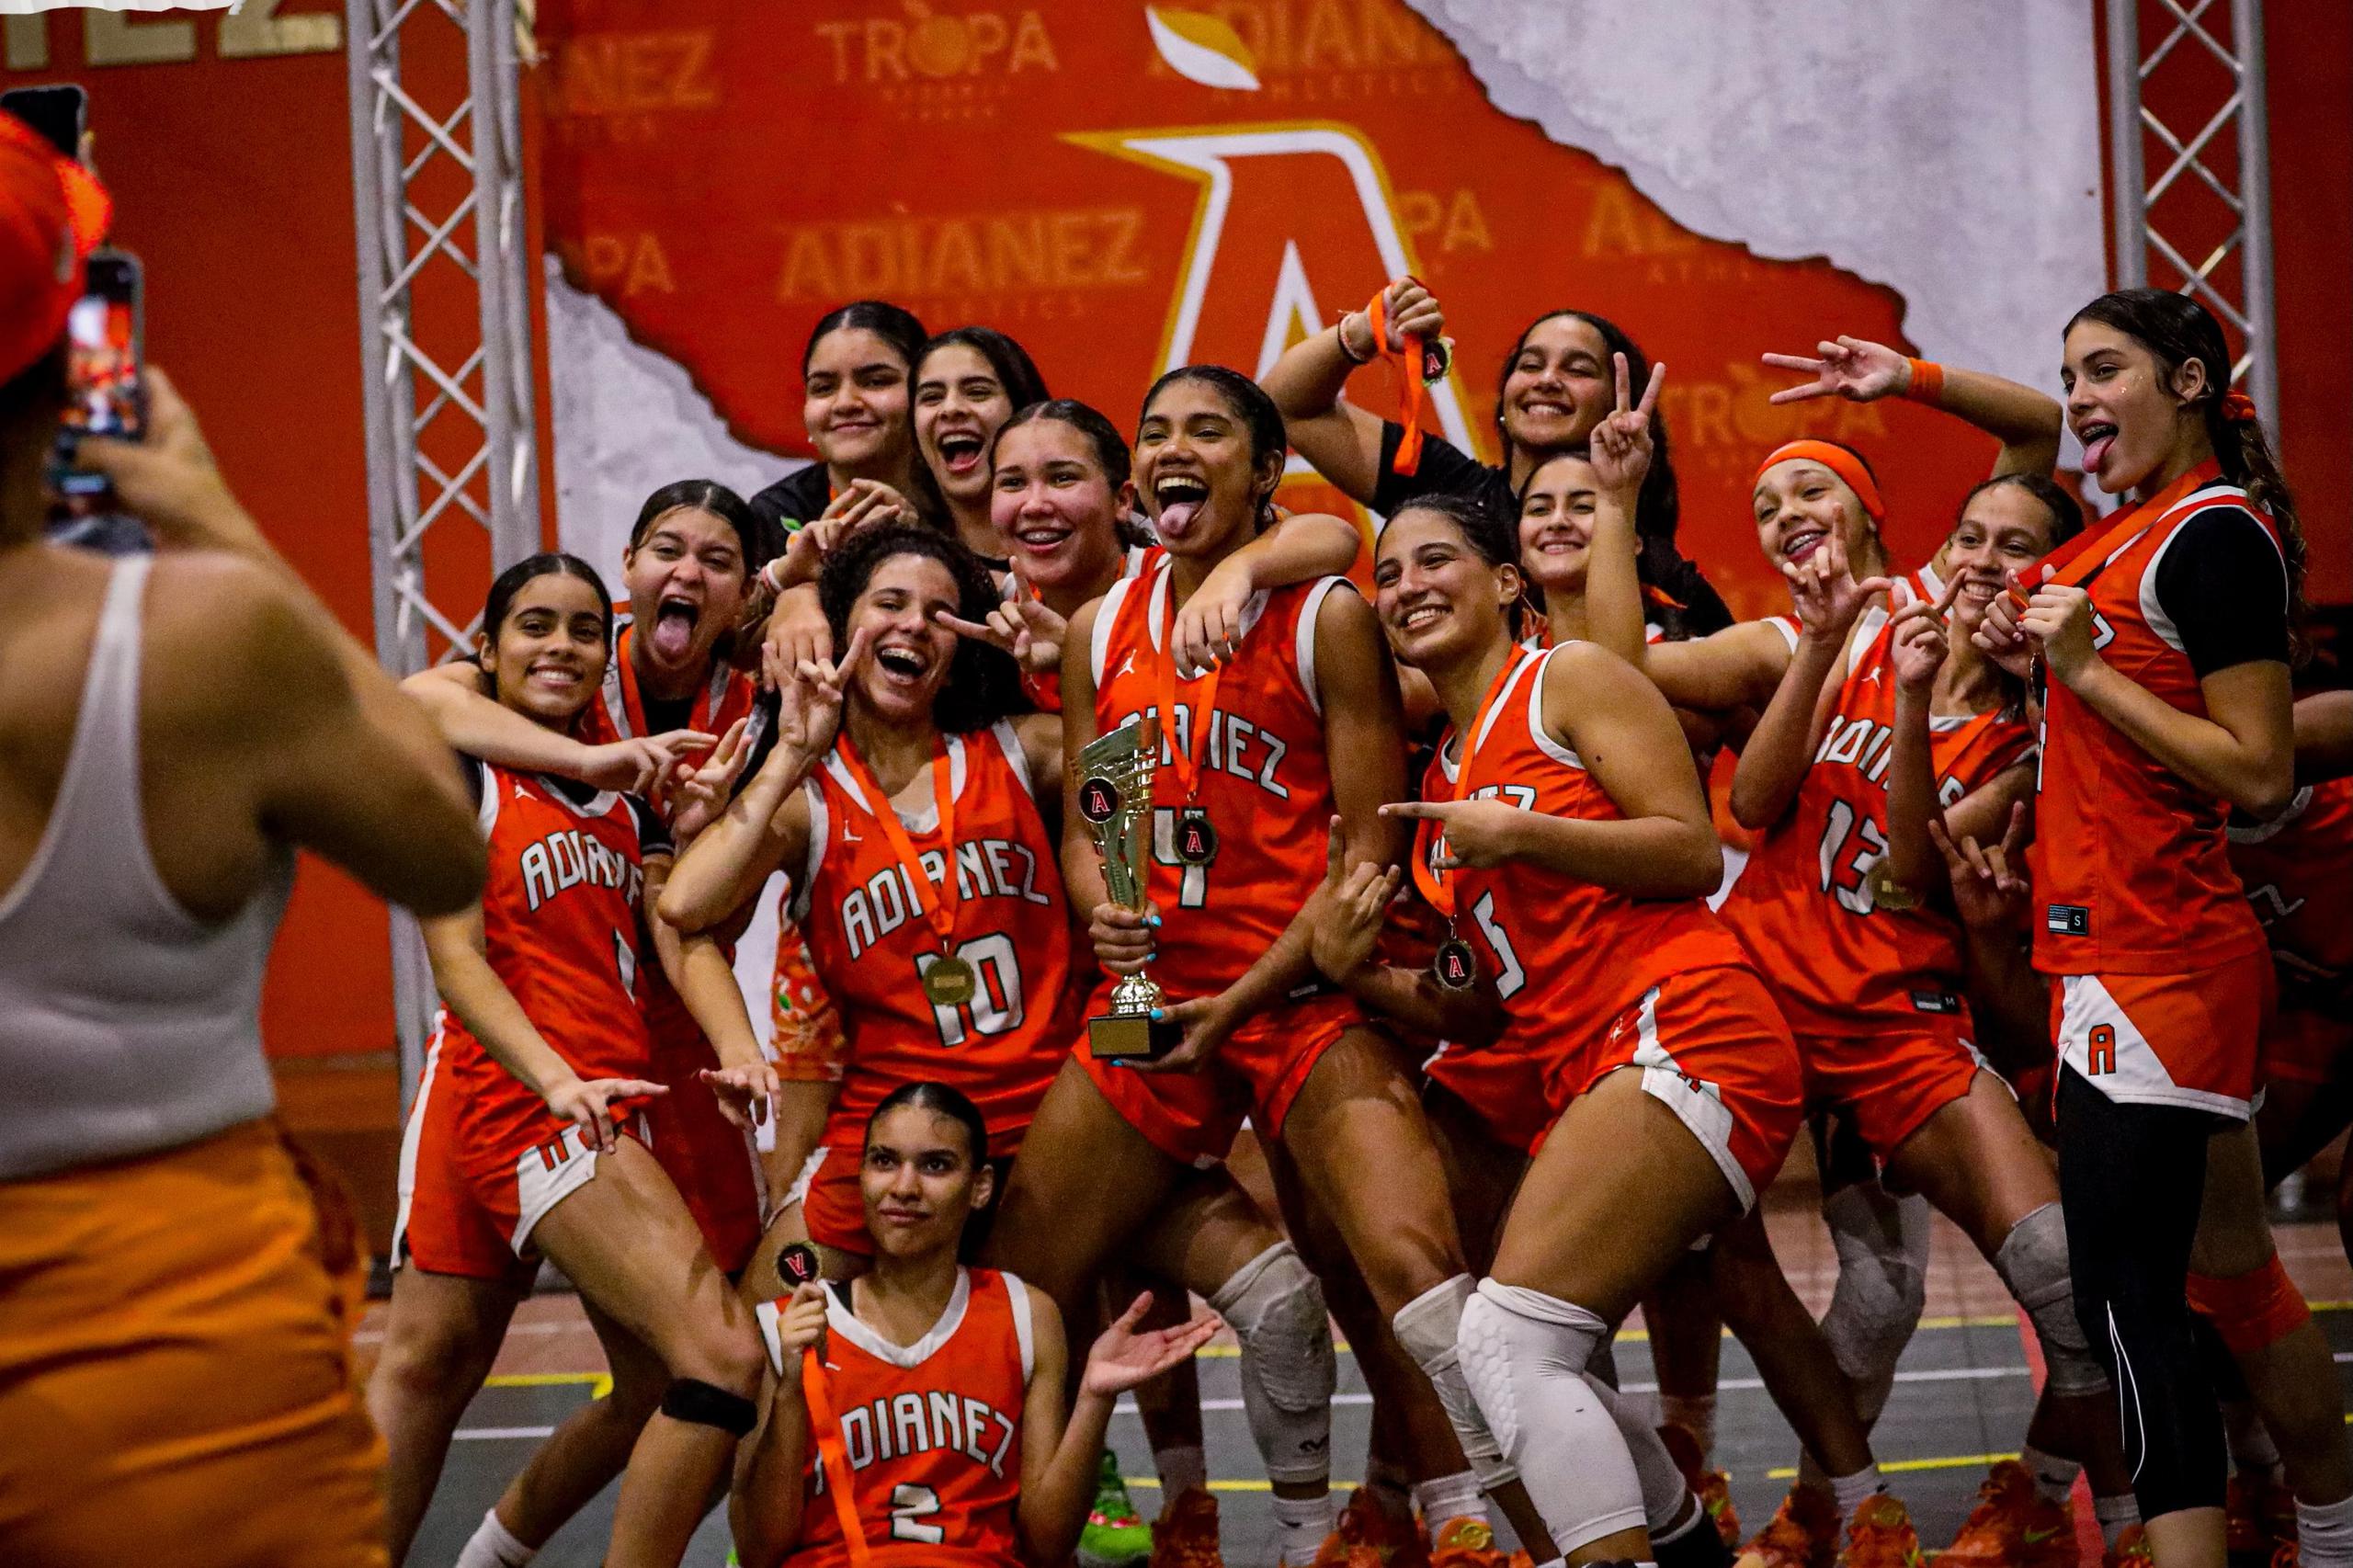 El equipo senior femenino de Adianez se impuso en la categoría senior de su torneo.